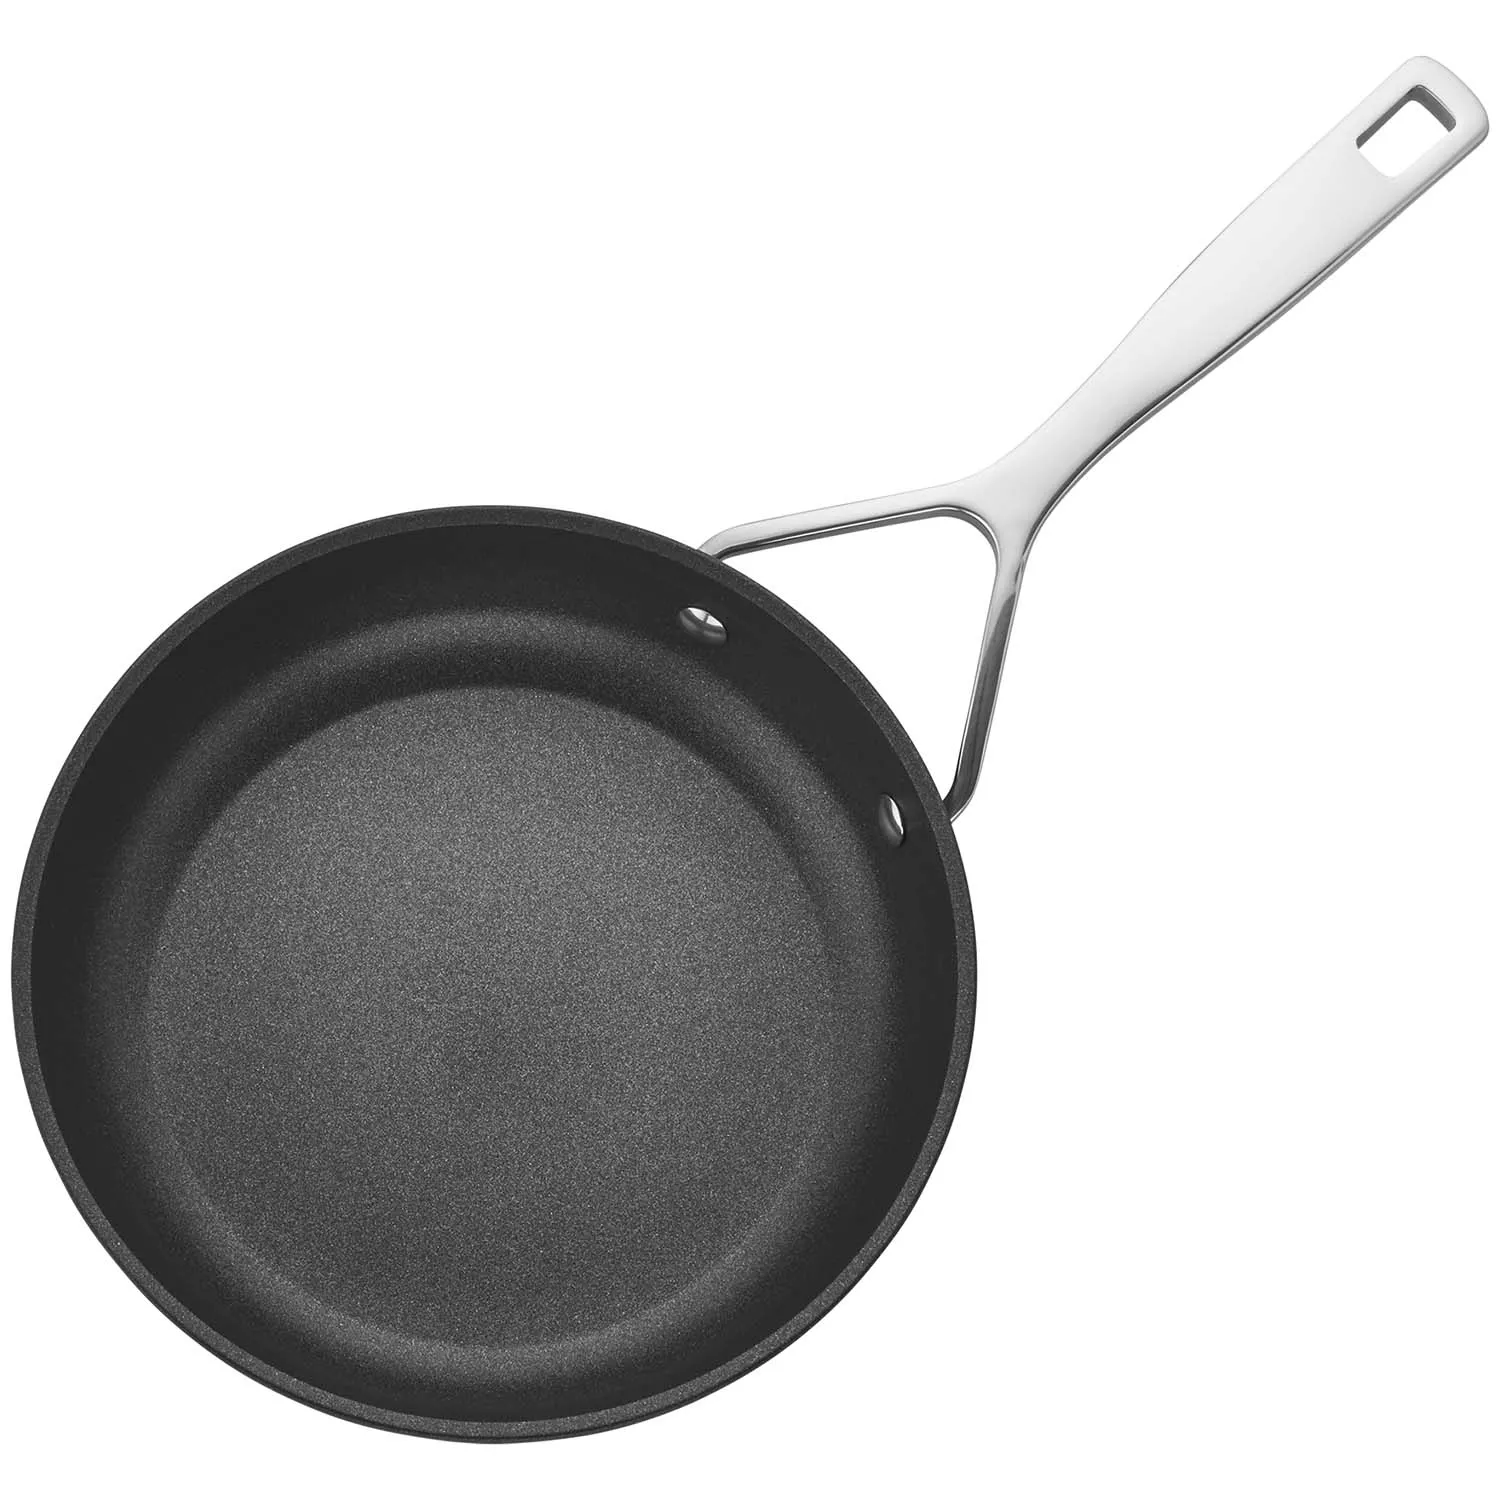 Choice 14 Aluminum Non-Stick Fry Pan